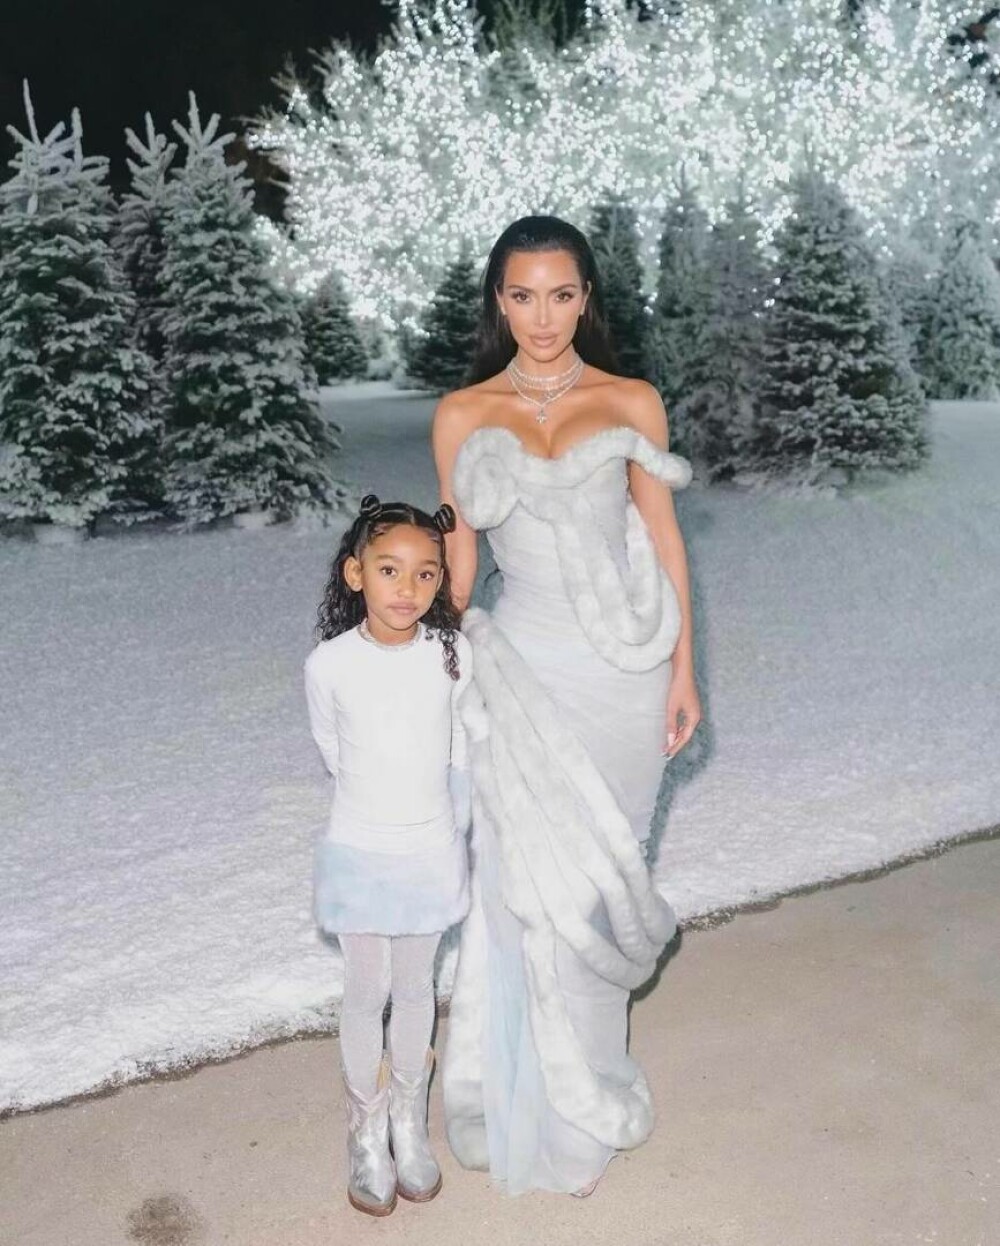 Chicago West seamănă leit cu mama ei. Poza postată de Kim Kardashian care i-a impresionat pe fani. GALERIE FOTO - Imaginea 4